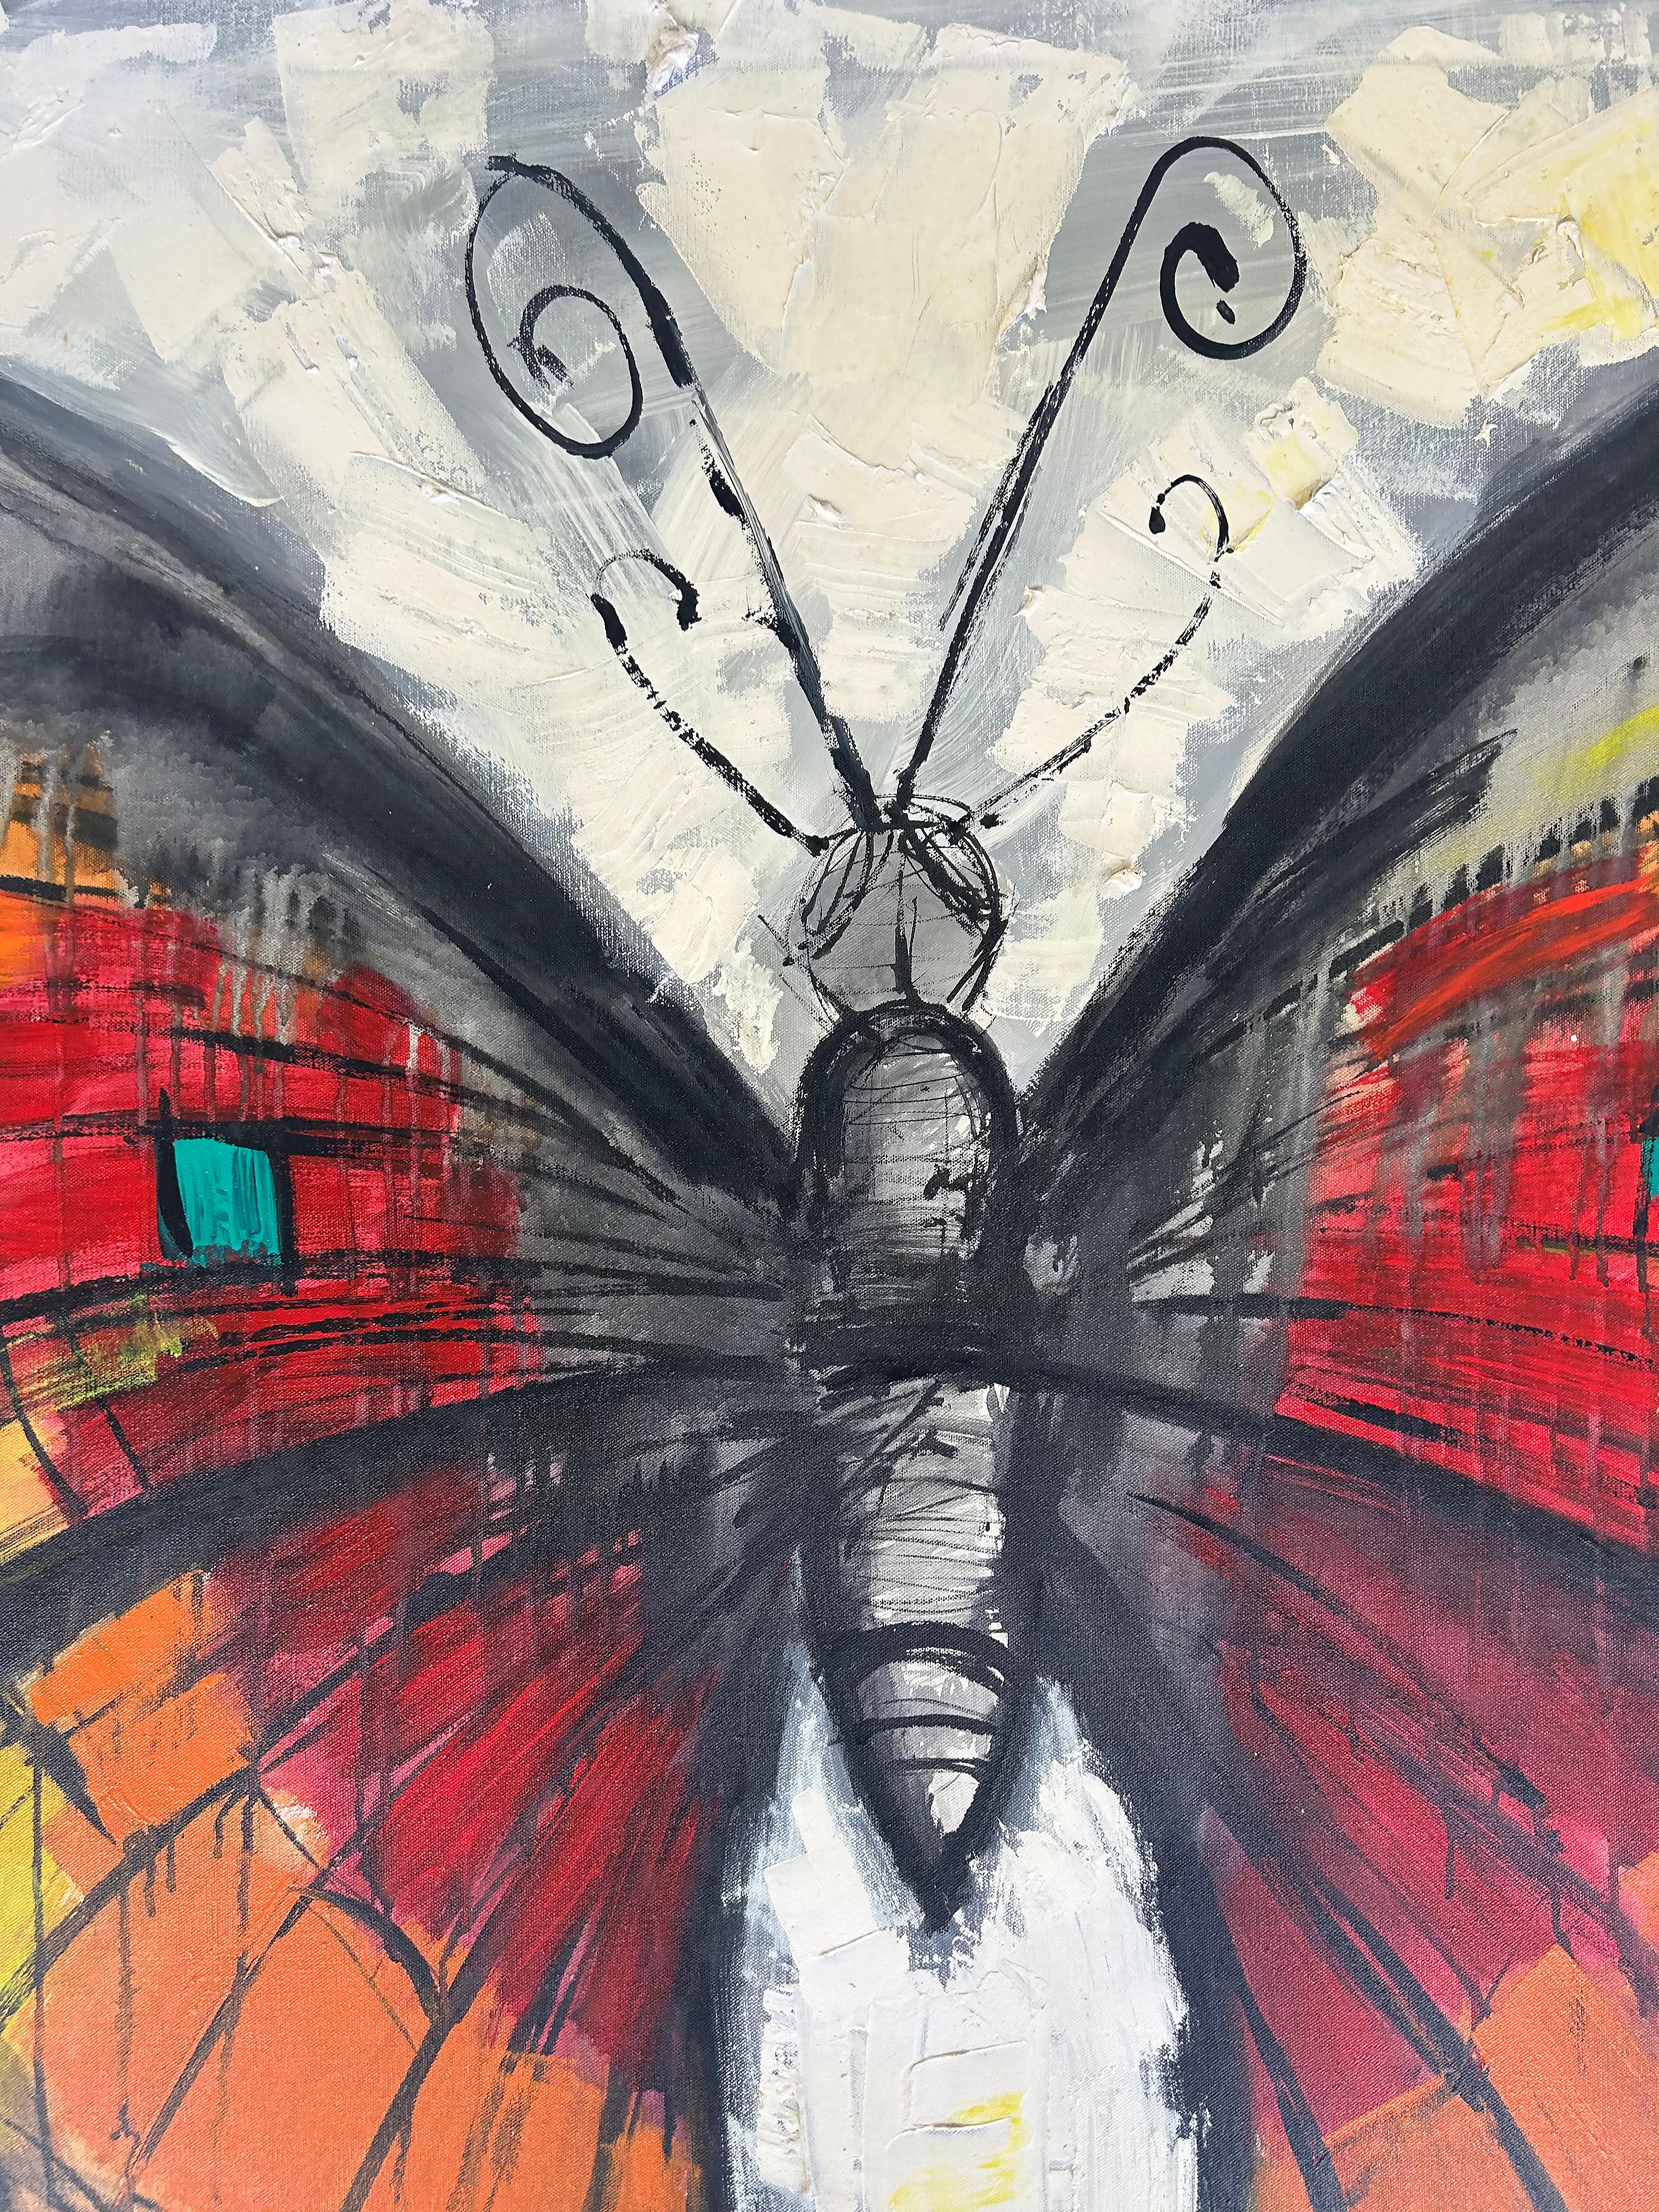 Gran cuadro vintage de Lee Reynolds sobre mariposas abstractas, enmarcado

Se ofrece a la venta un gran cuadro abstracto enmarcado de finales del siglo XX que representa una mariposa, obra del artista estadounidense Lee Reynolds.  El cuadro es